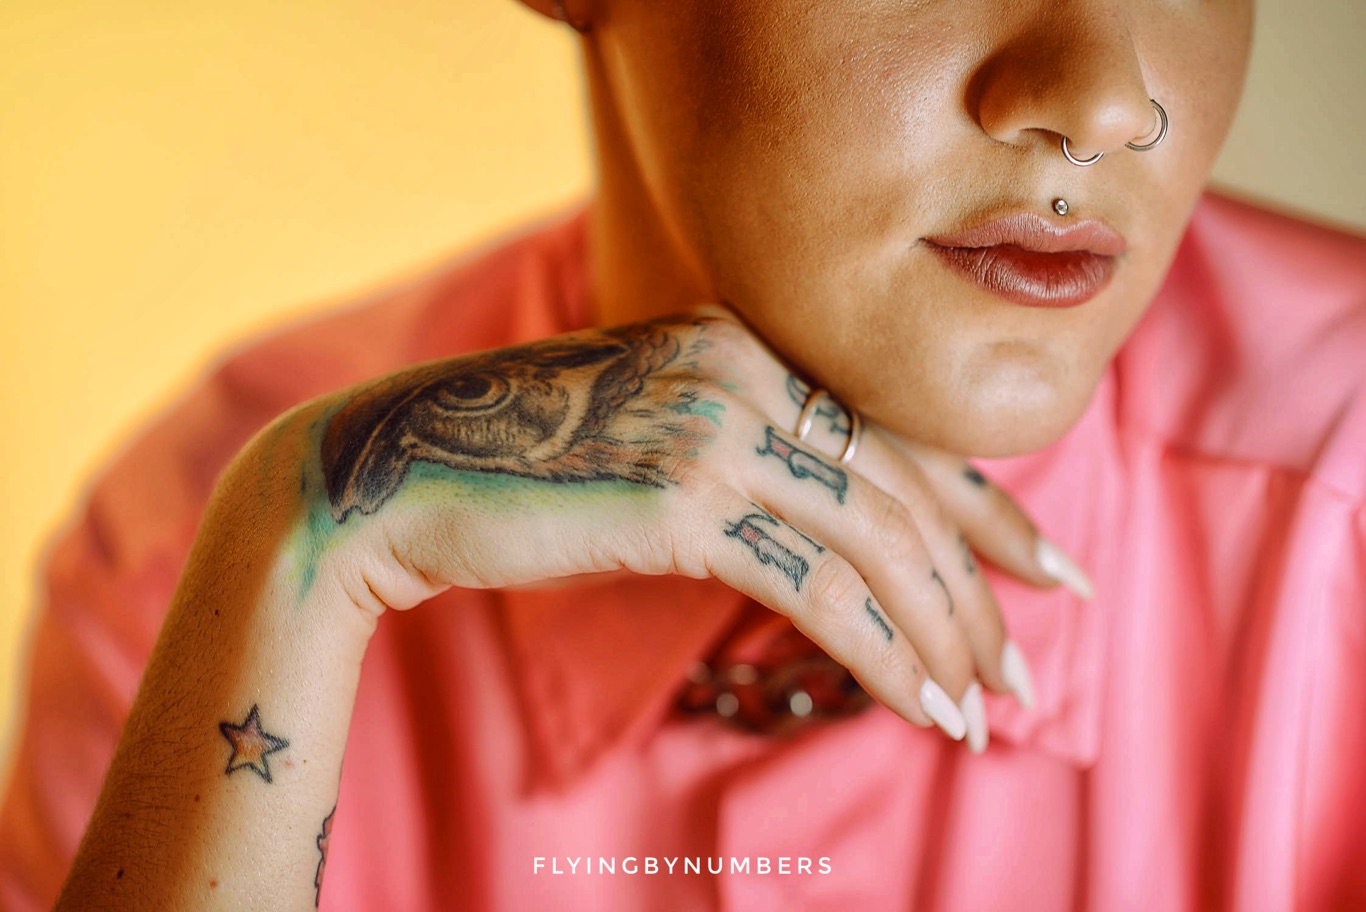 Flight attendant piercings and tattoos